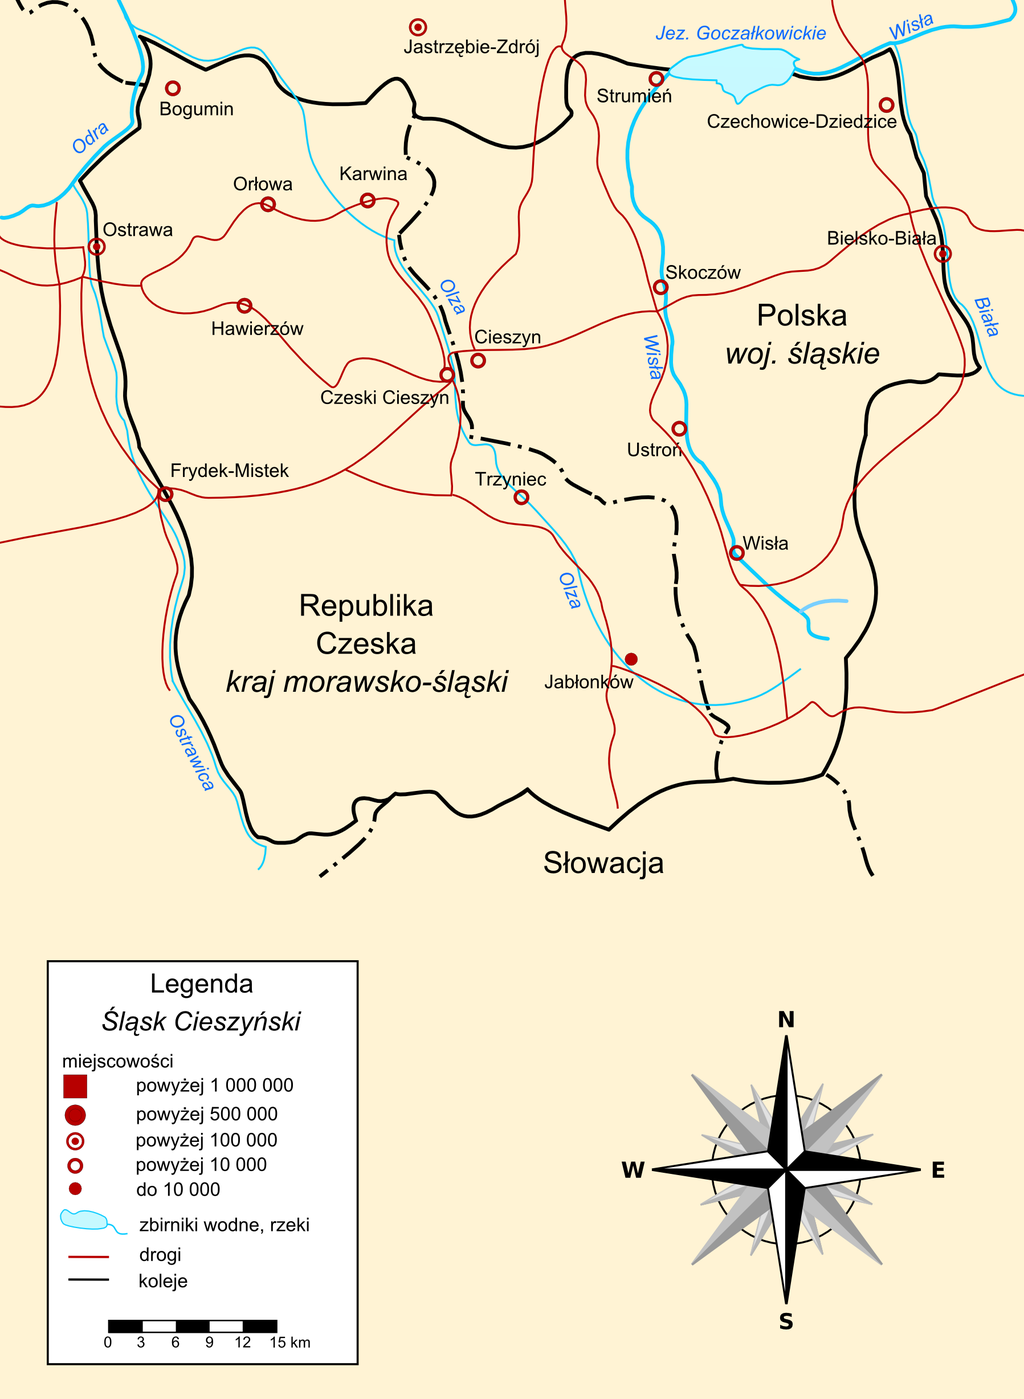 Śląsk Cieszyński. Źródło - Wikipedia